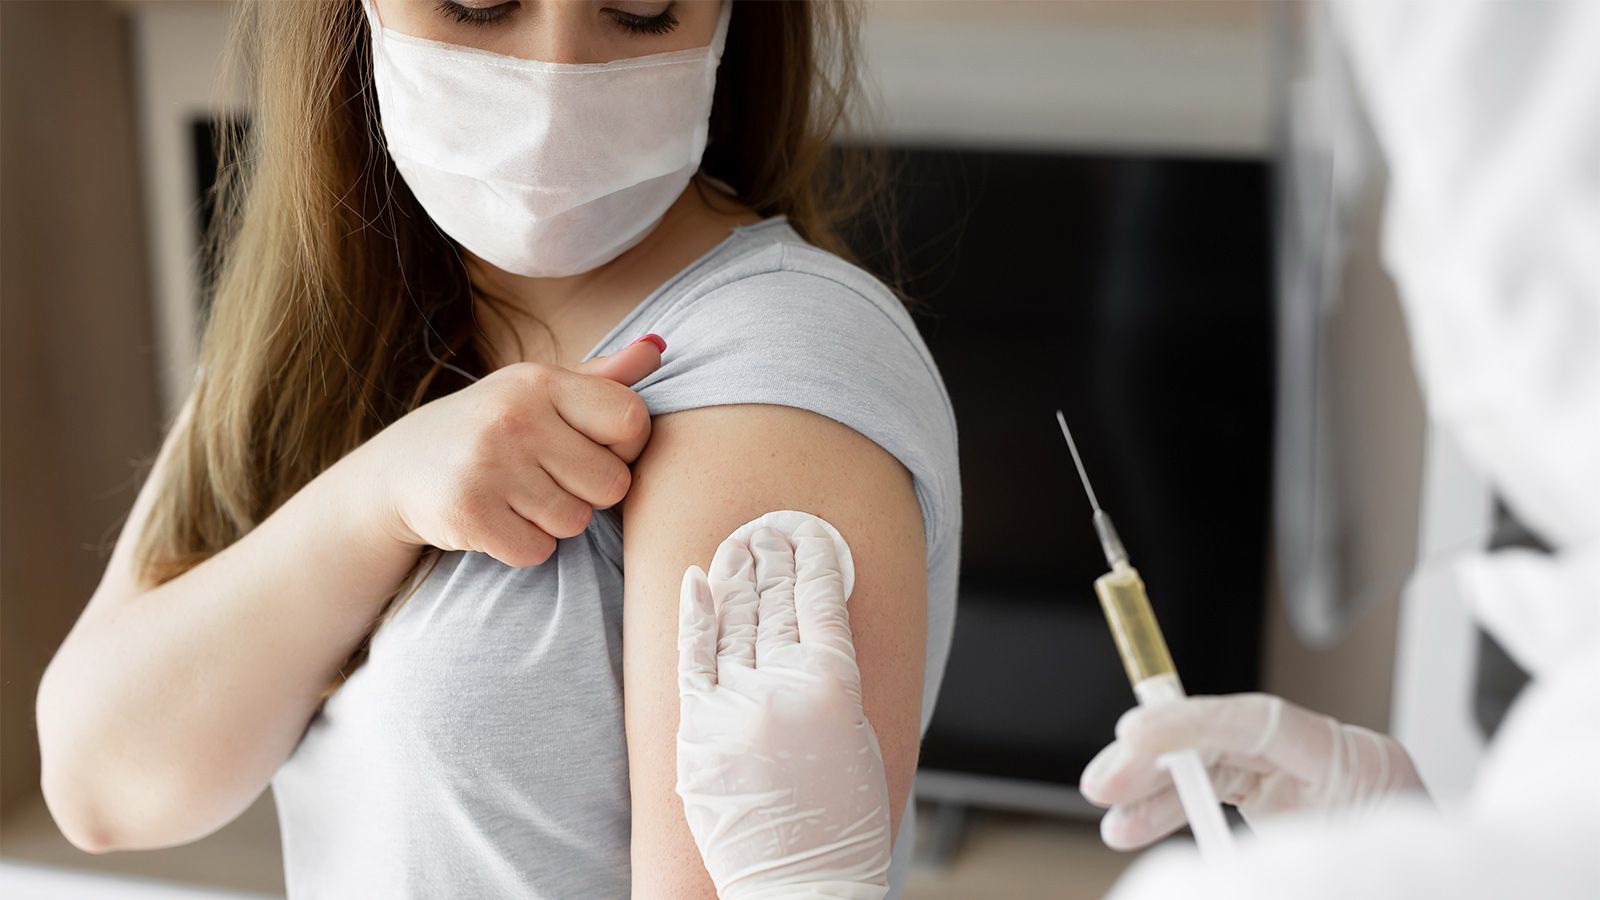 “Их же никто не запрещает”: Производители иностранных вакцин подали заявку на регистрацию в РФ